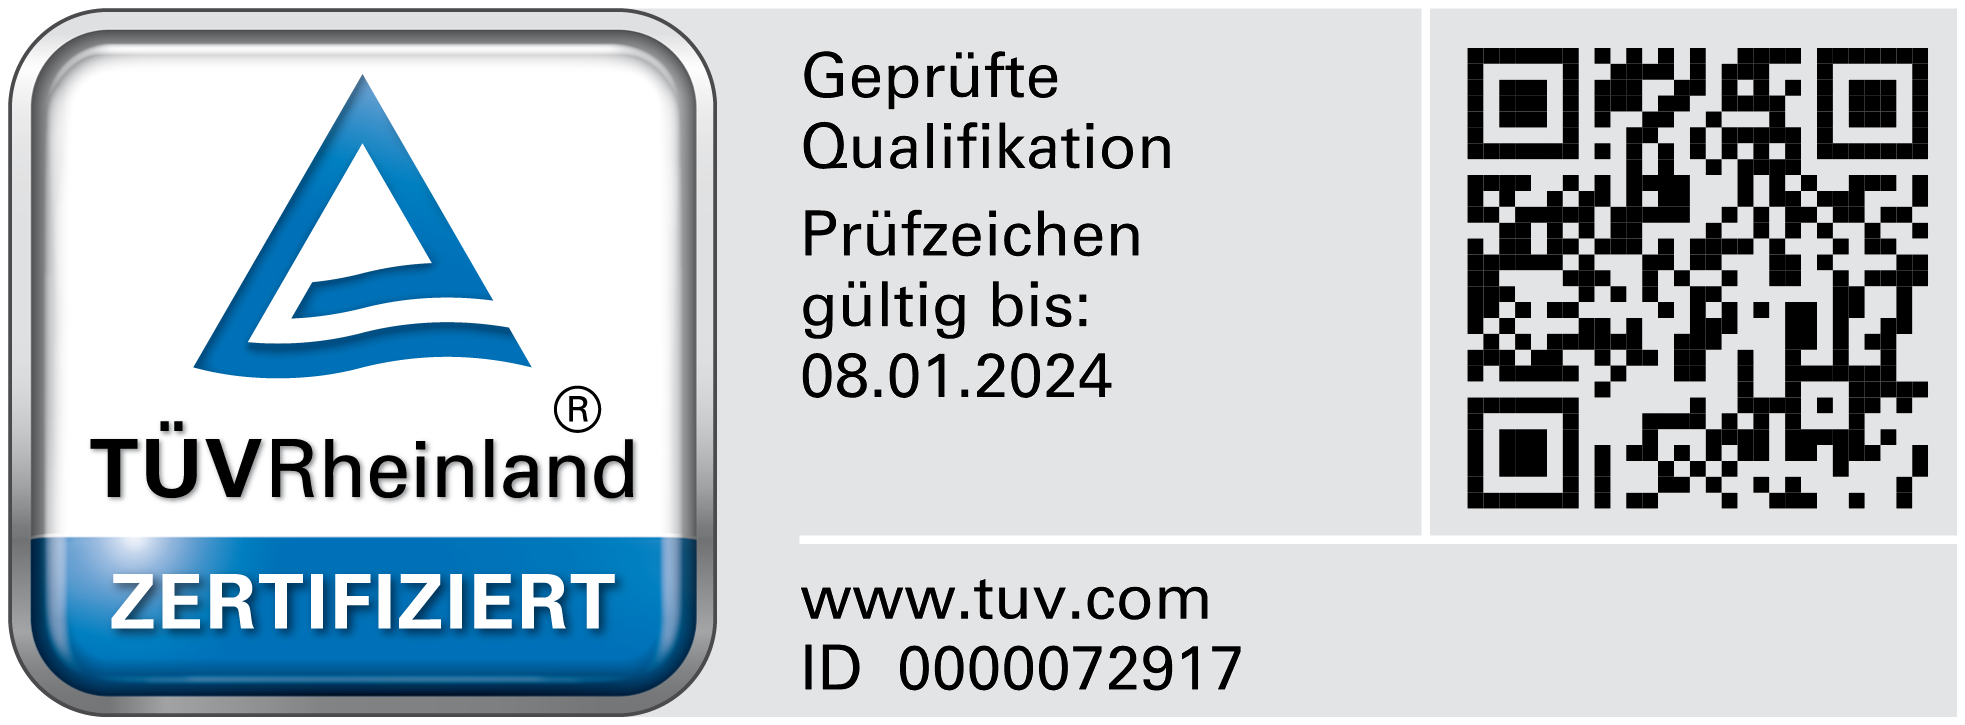 Zertifizierter Externer Datenschutzbeauftragter (TÜV) seit 2020